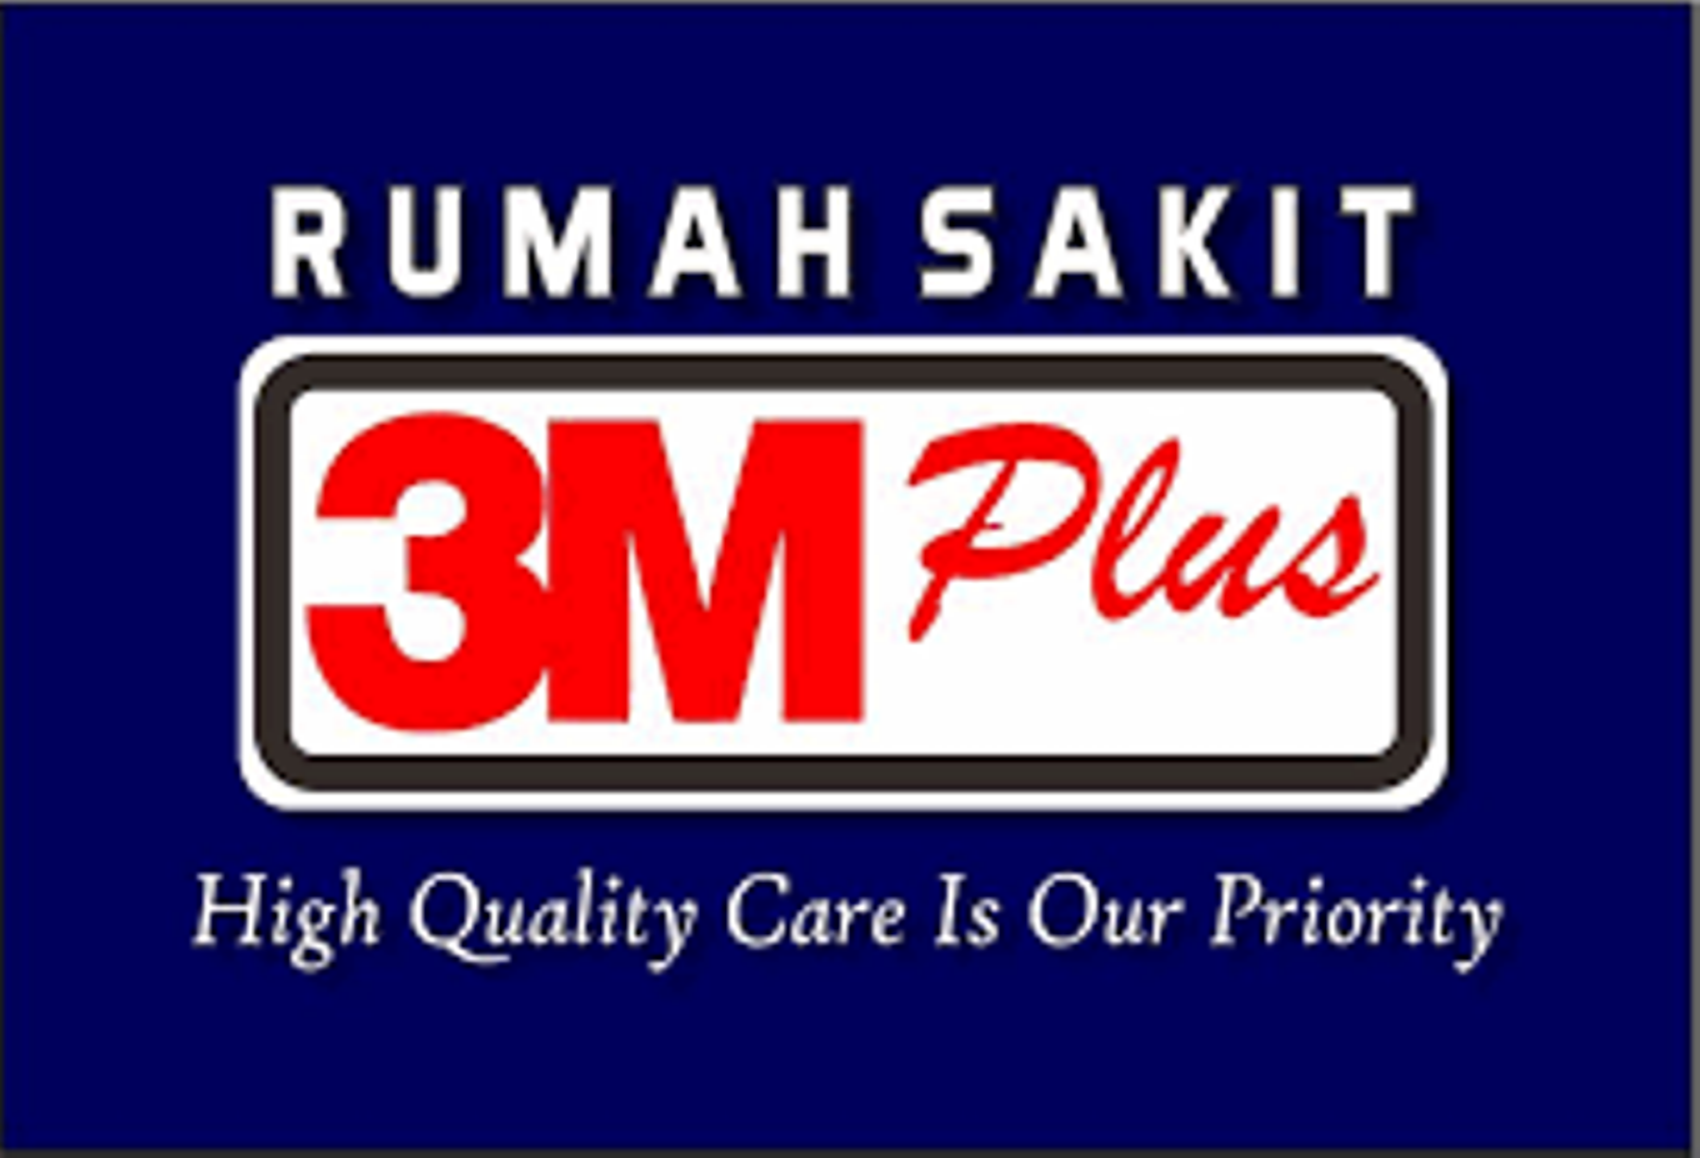 RS 3M Plus Tembilahan Buka Lowongan Kerja, Berikut Syarat dan Posisinya